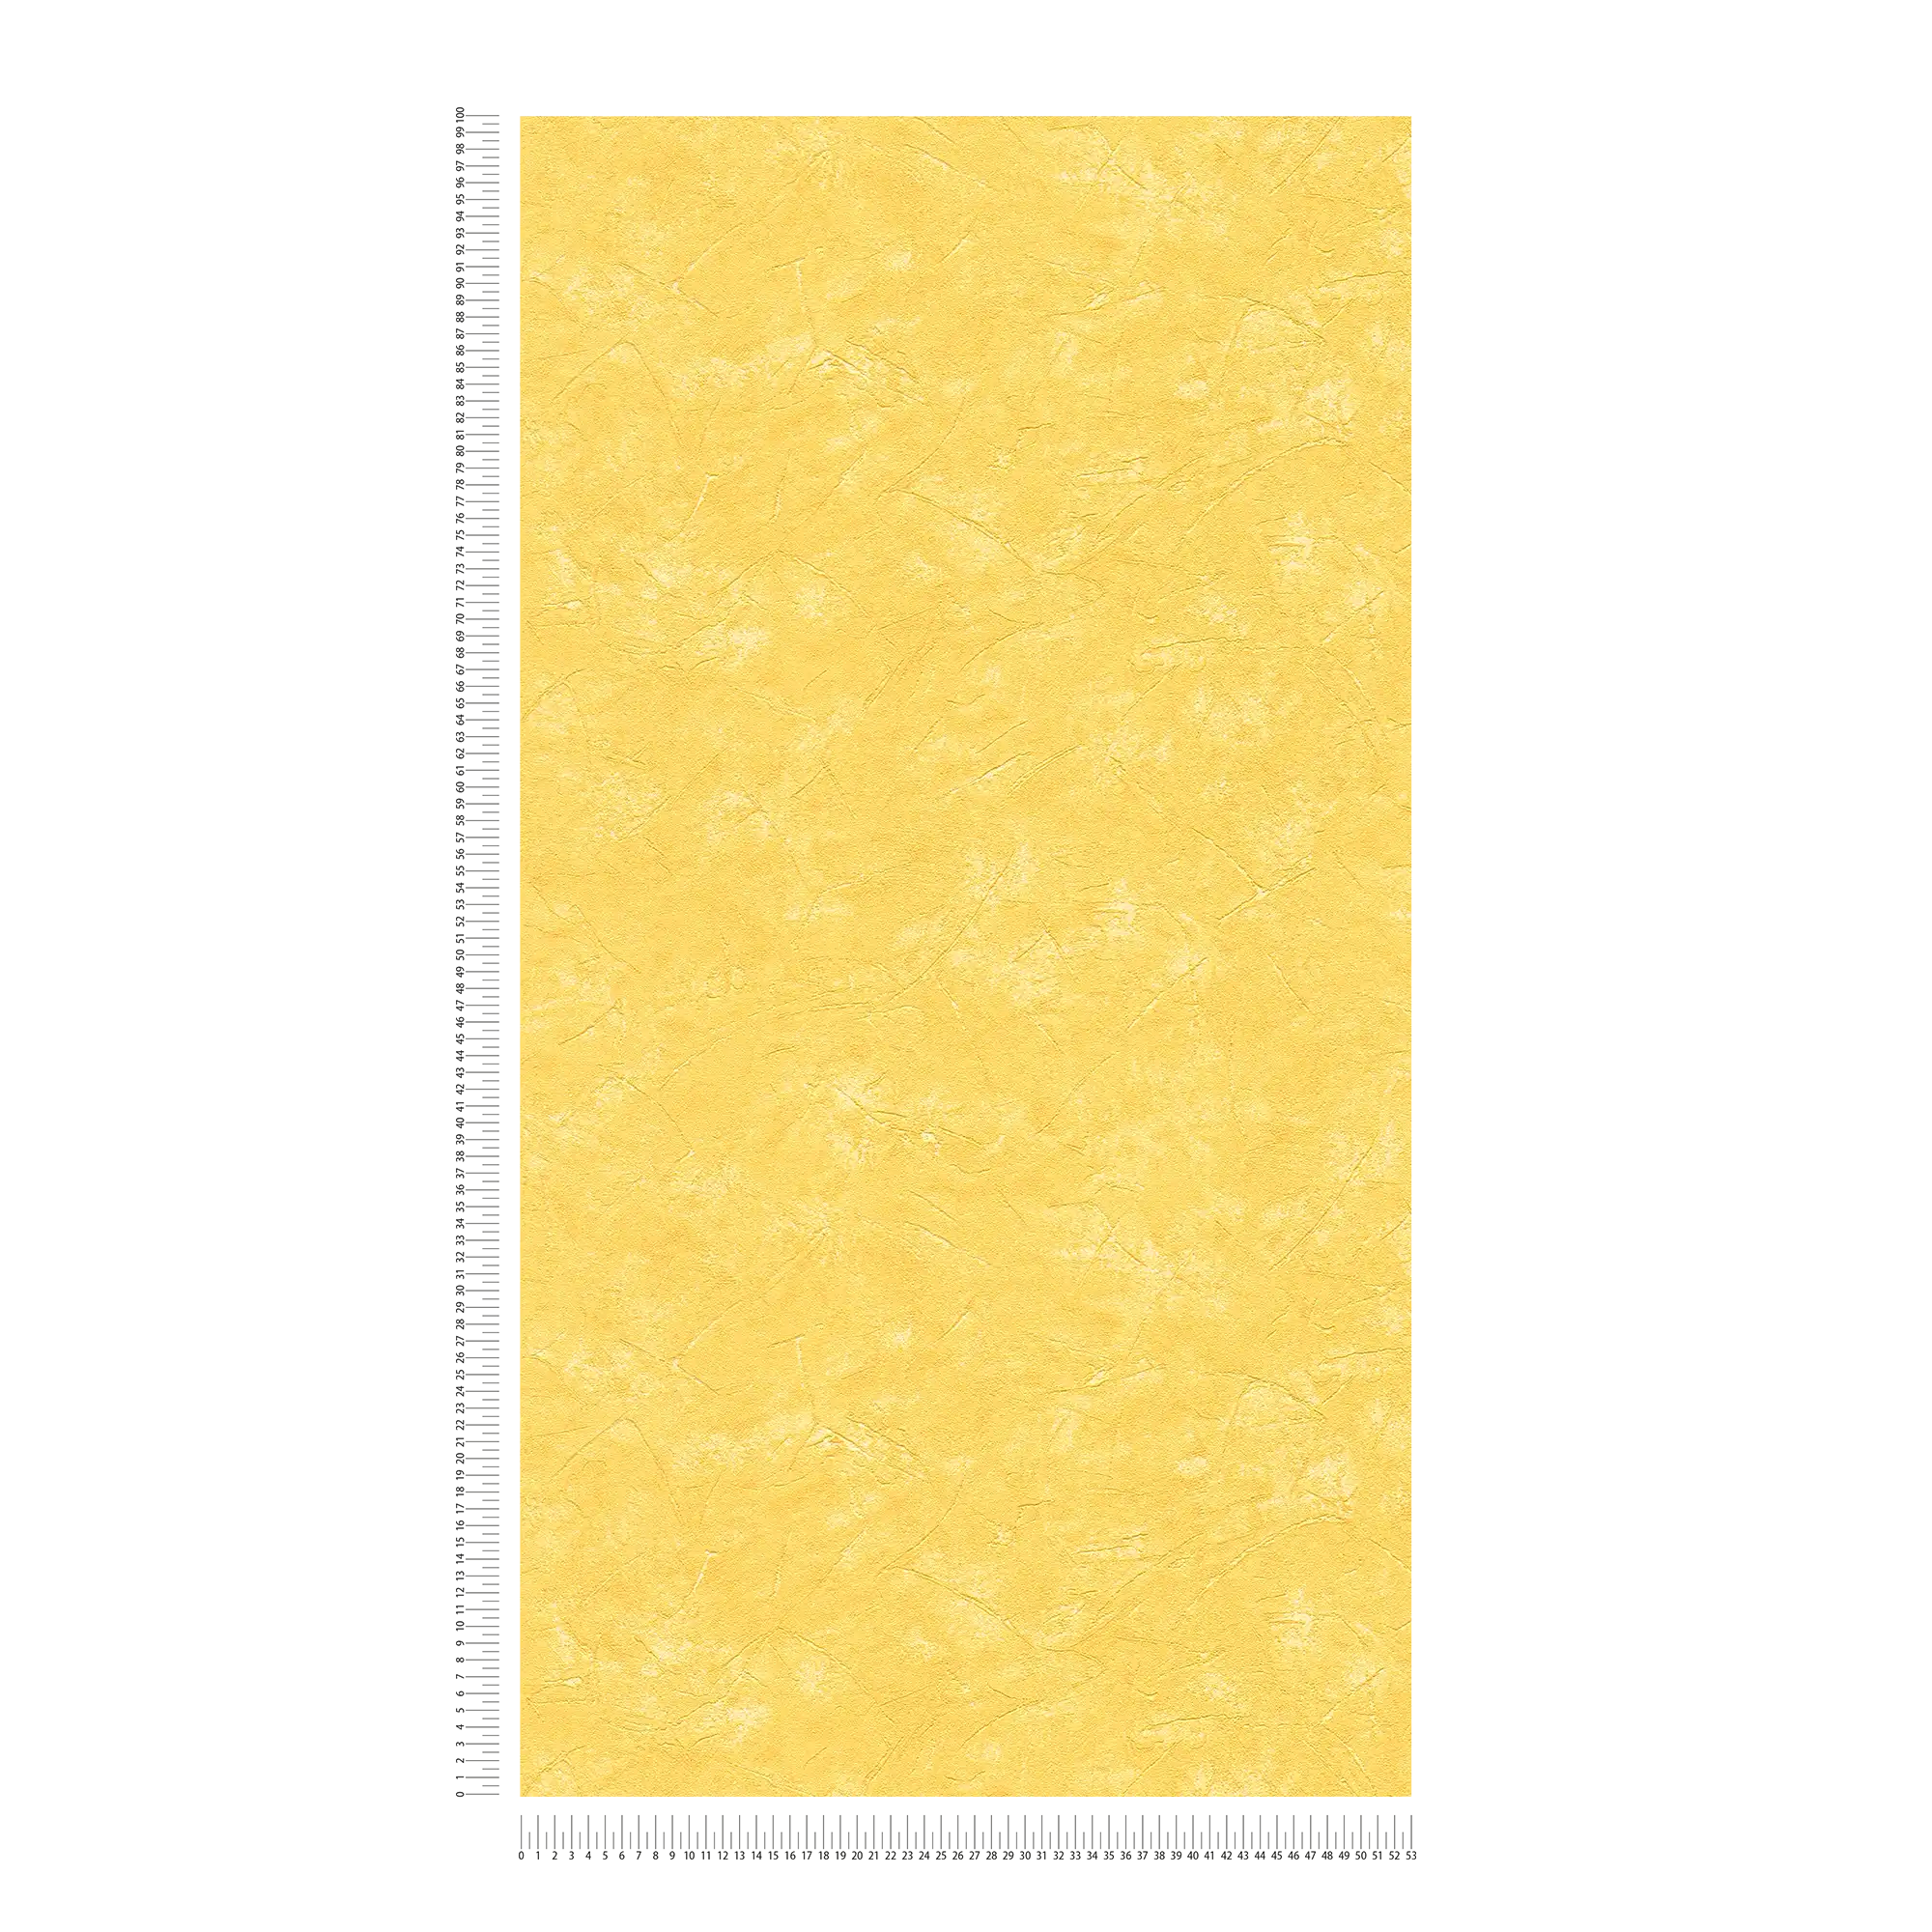             papier peint en papier imitation plâtre jaune soleil style méditerranéen
        